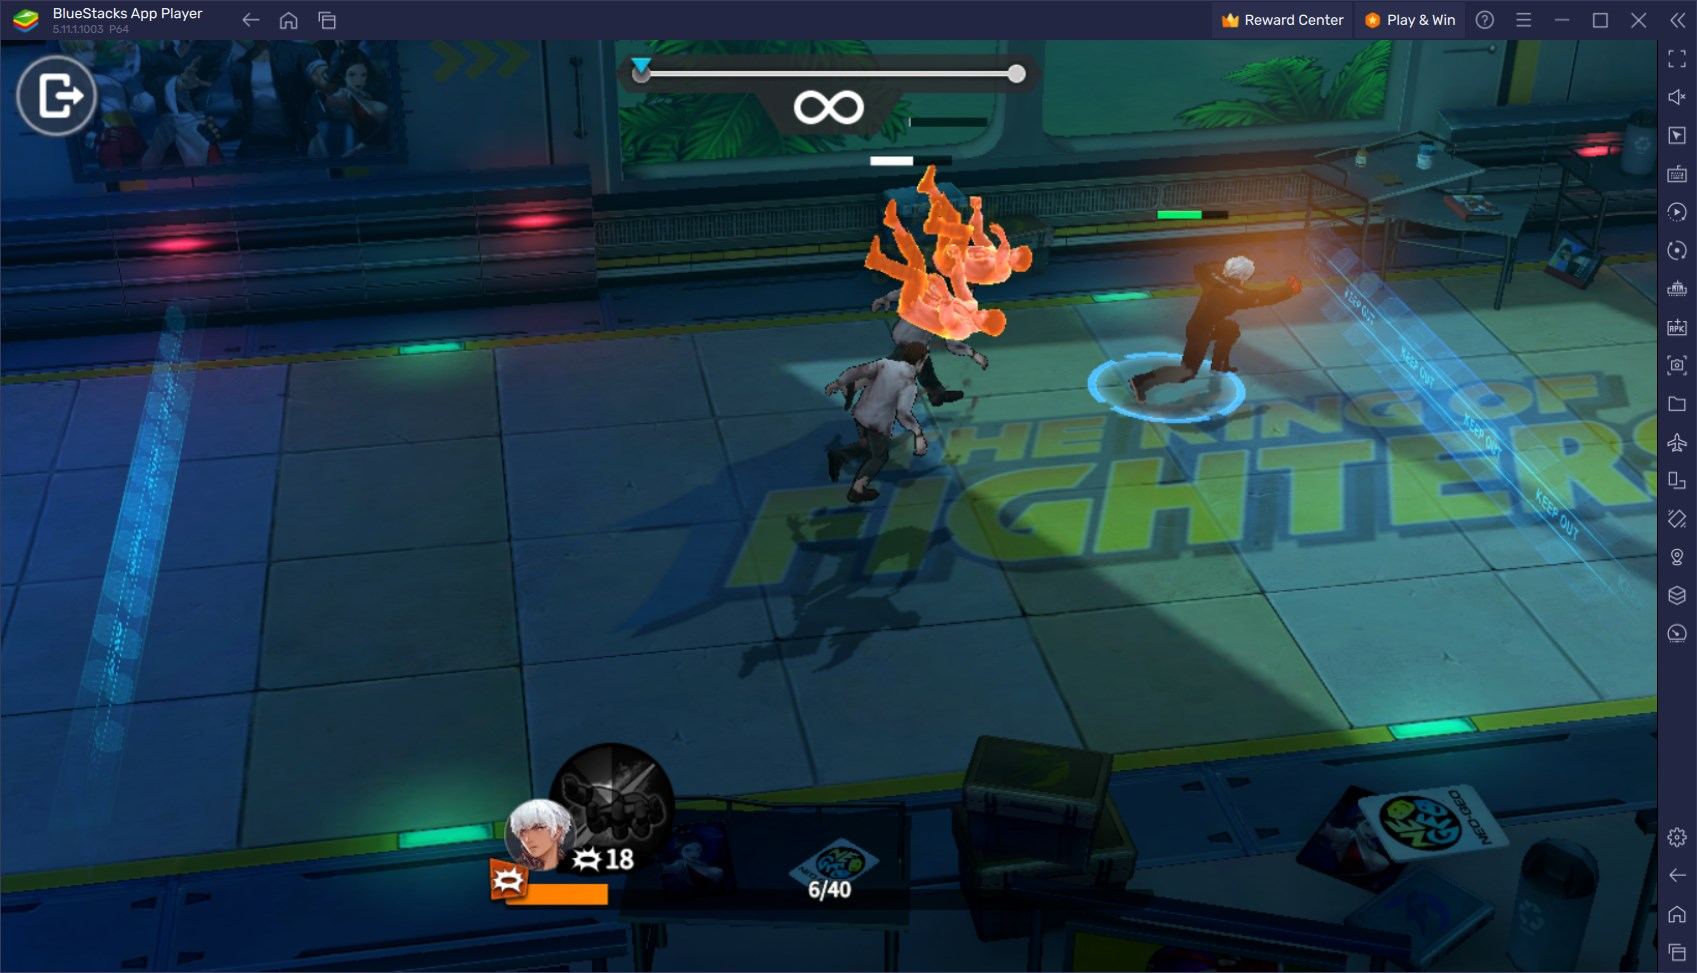 King of Fighters: Survival City auf dem PC - Wie du dein Gameplay mit unseren BlueStacks Tools und Funktionen verbesserst